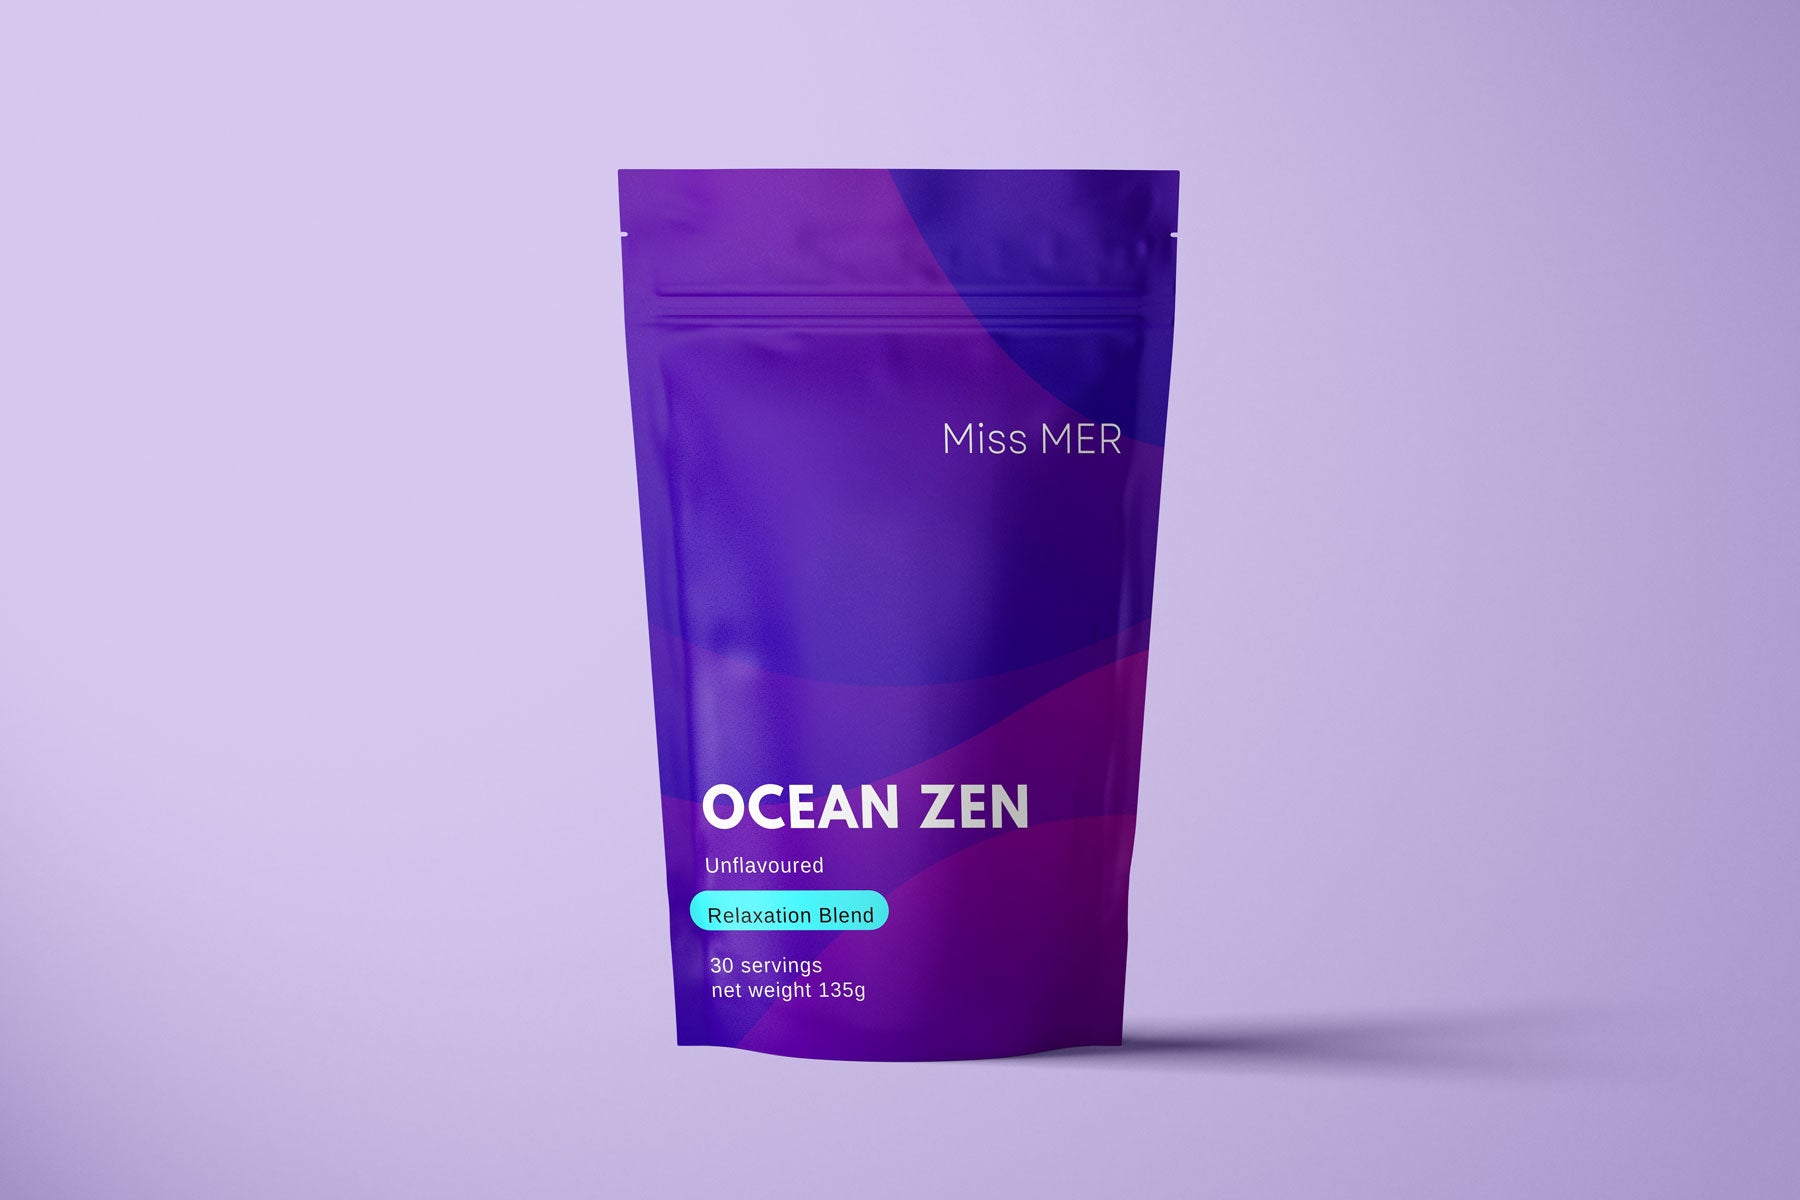 Ocean Zen - Relaxation Blend by Miss MER